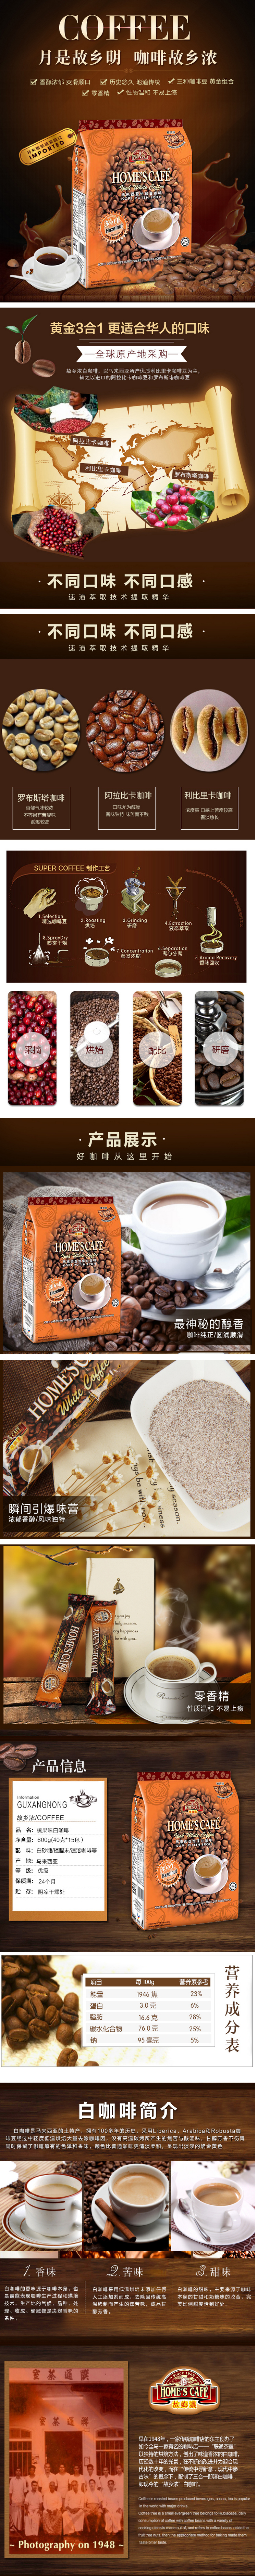 淘宝美工小盈子马来西亚进口白咖啡作品